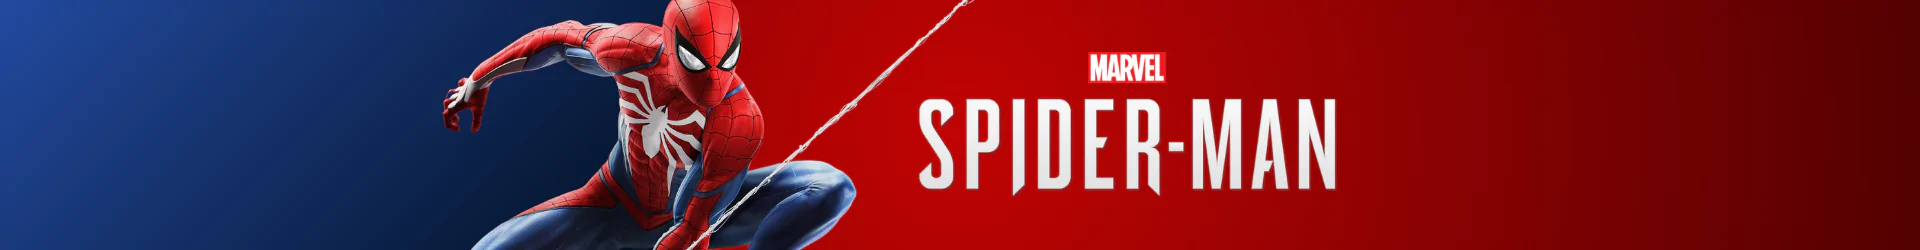 Spider-Man games banner